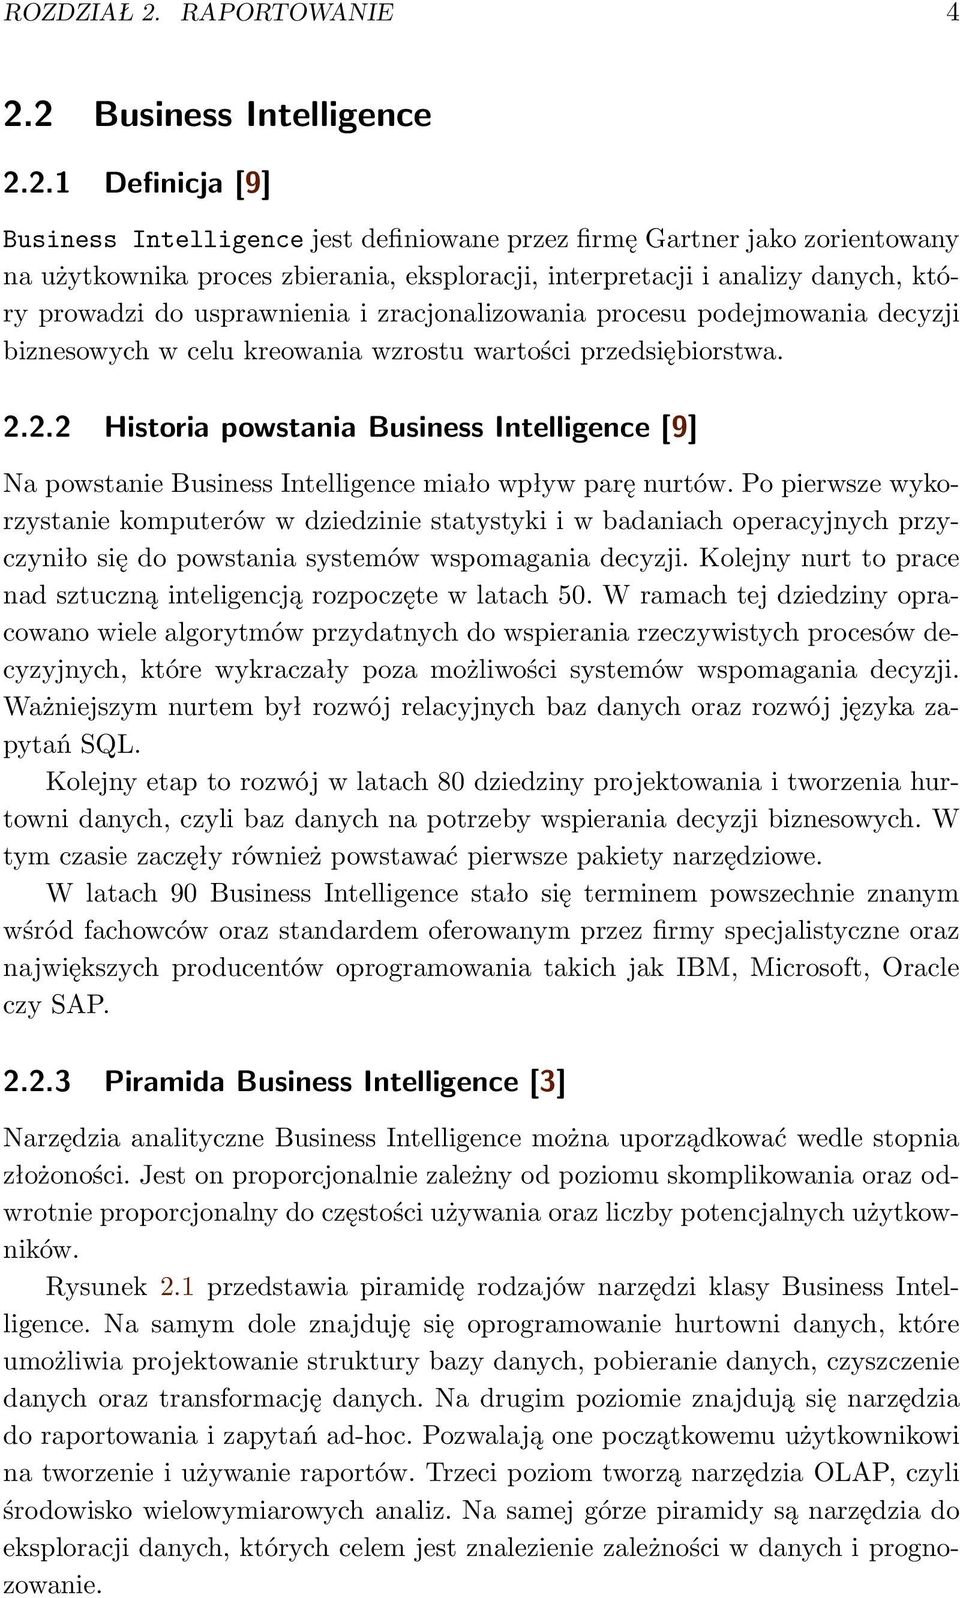 2 Business Intelligence 2.2.1 Definicja [9] Business Intelligence jest definiowane przez firmę Gartner jako zorientowany na użytkownika proces zbierania, eksploracji, interpretacji i analizy danych,